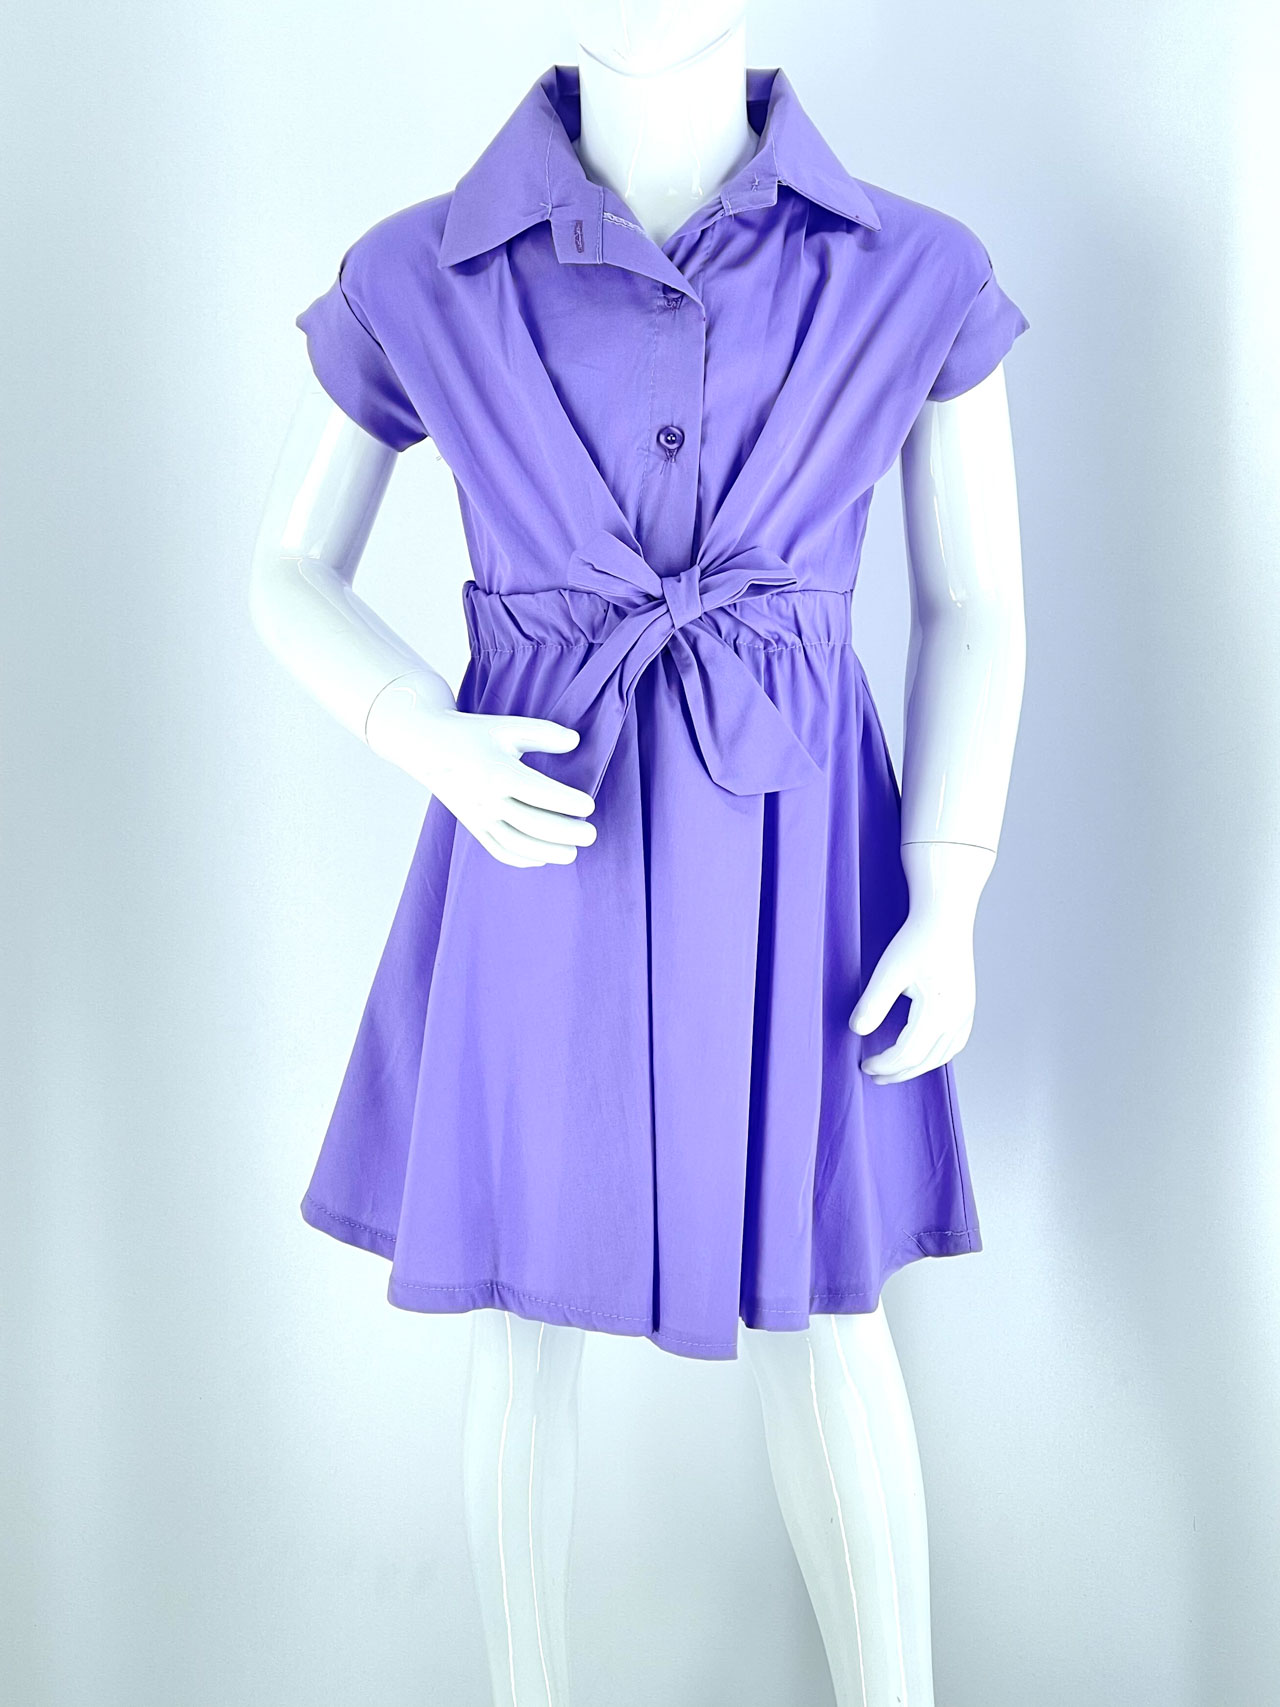 Φόρεμα μονόχρωμο με ζωνάκι λάστιχο κορίτσι κωδ. 210711 μπροστινή όψη